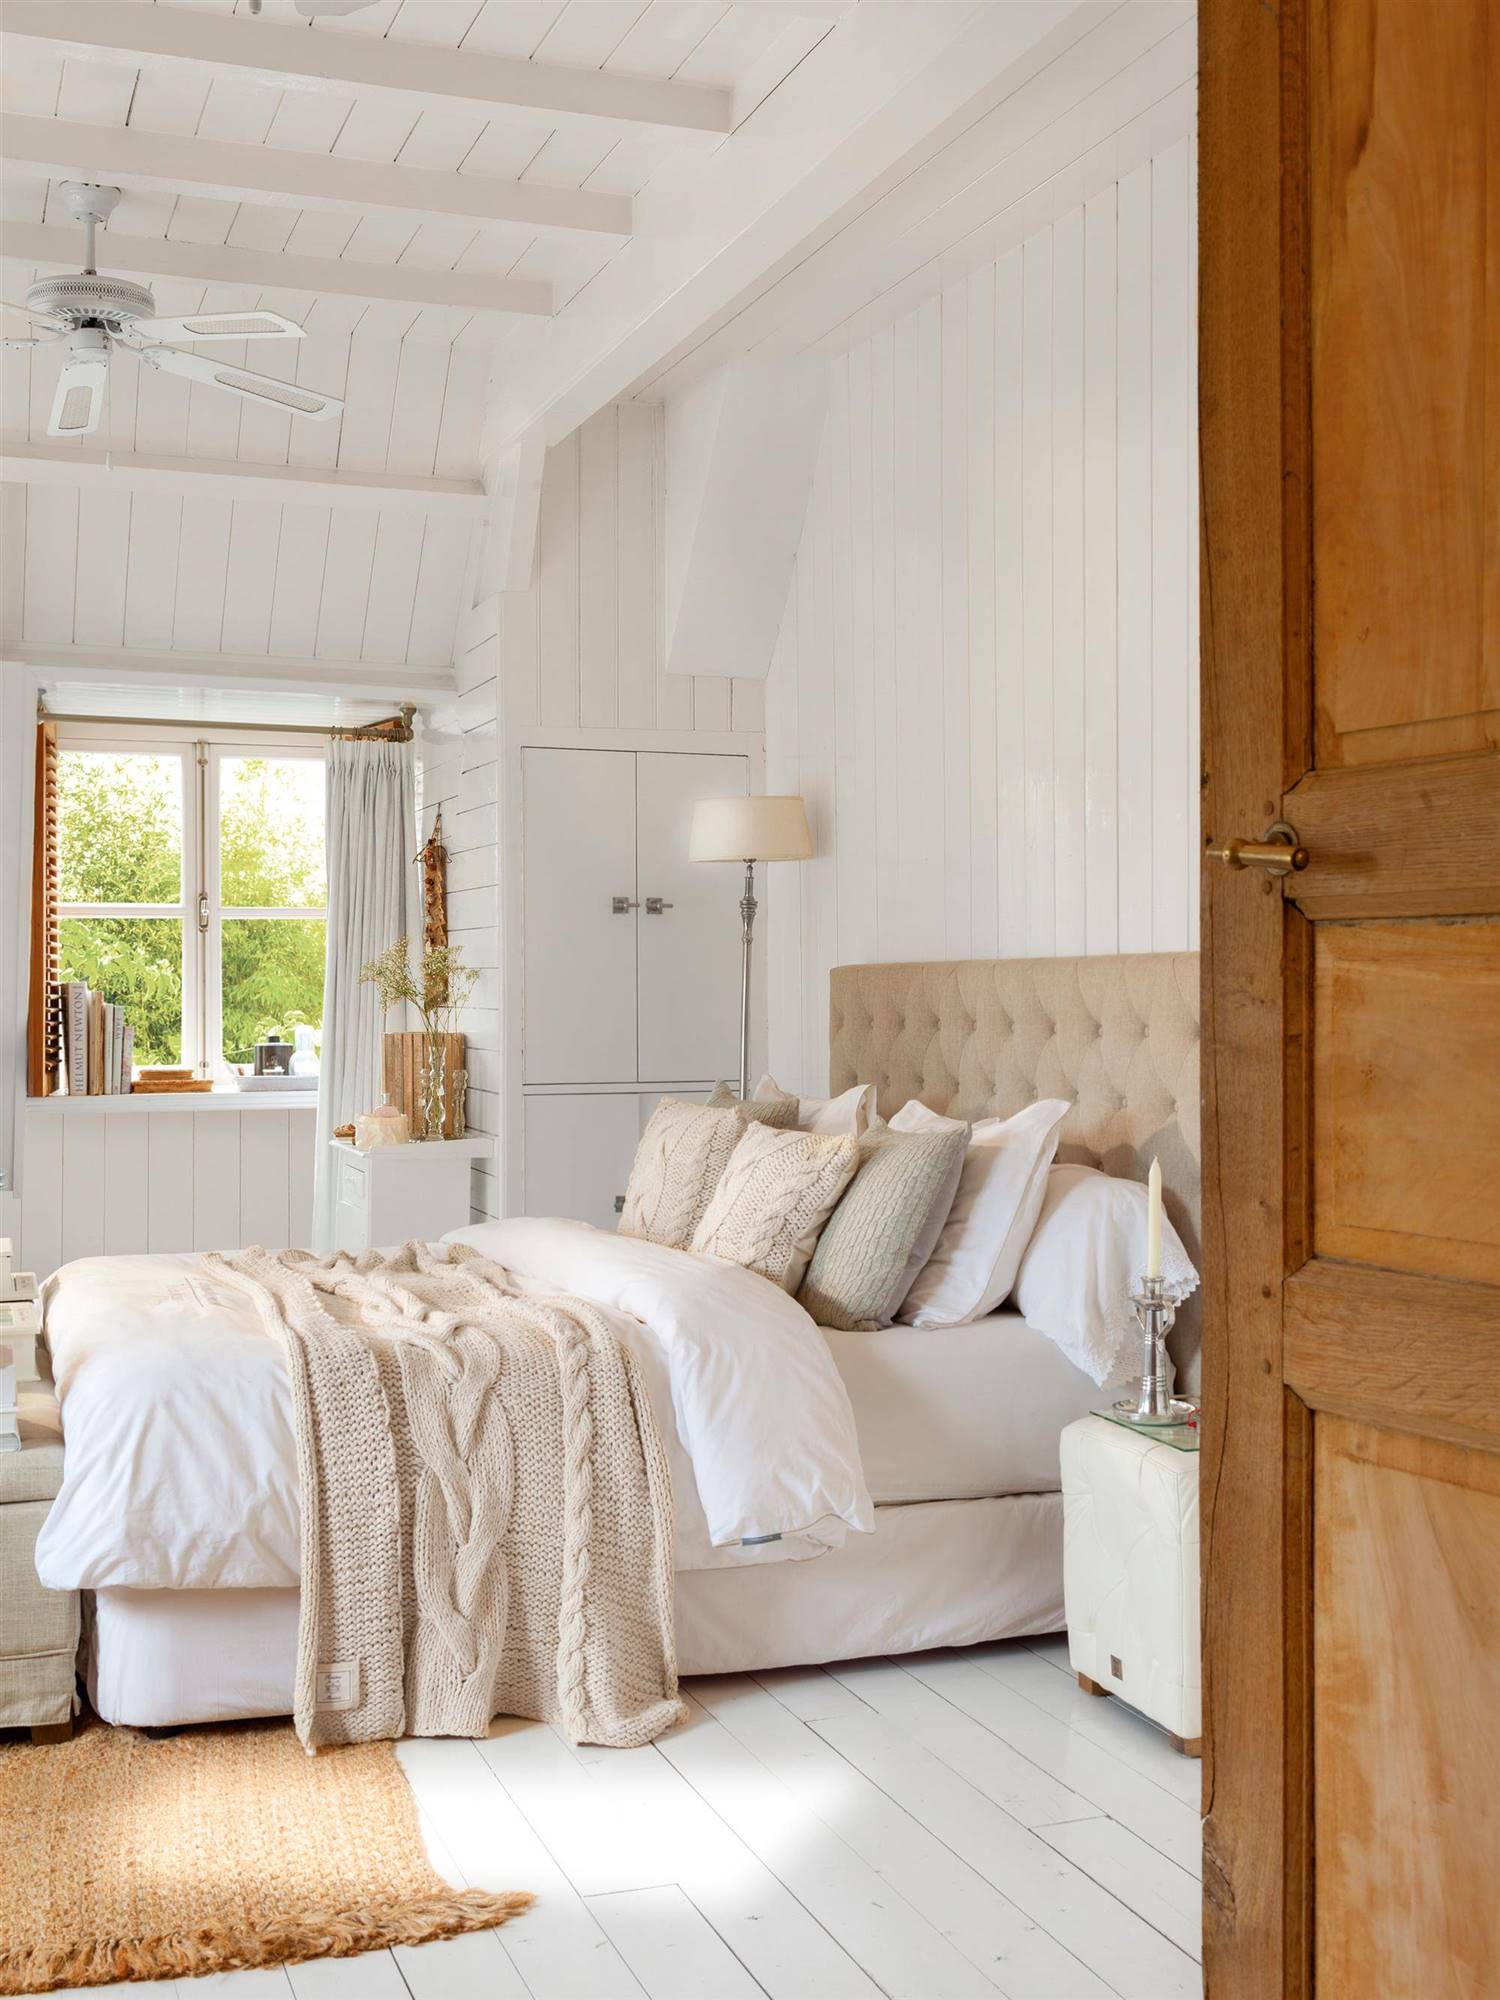 Dormitorio de estilo nórdico decorado en blanco.